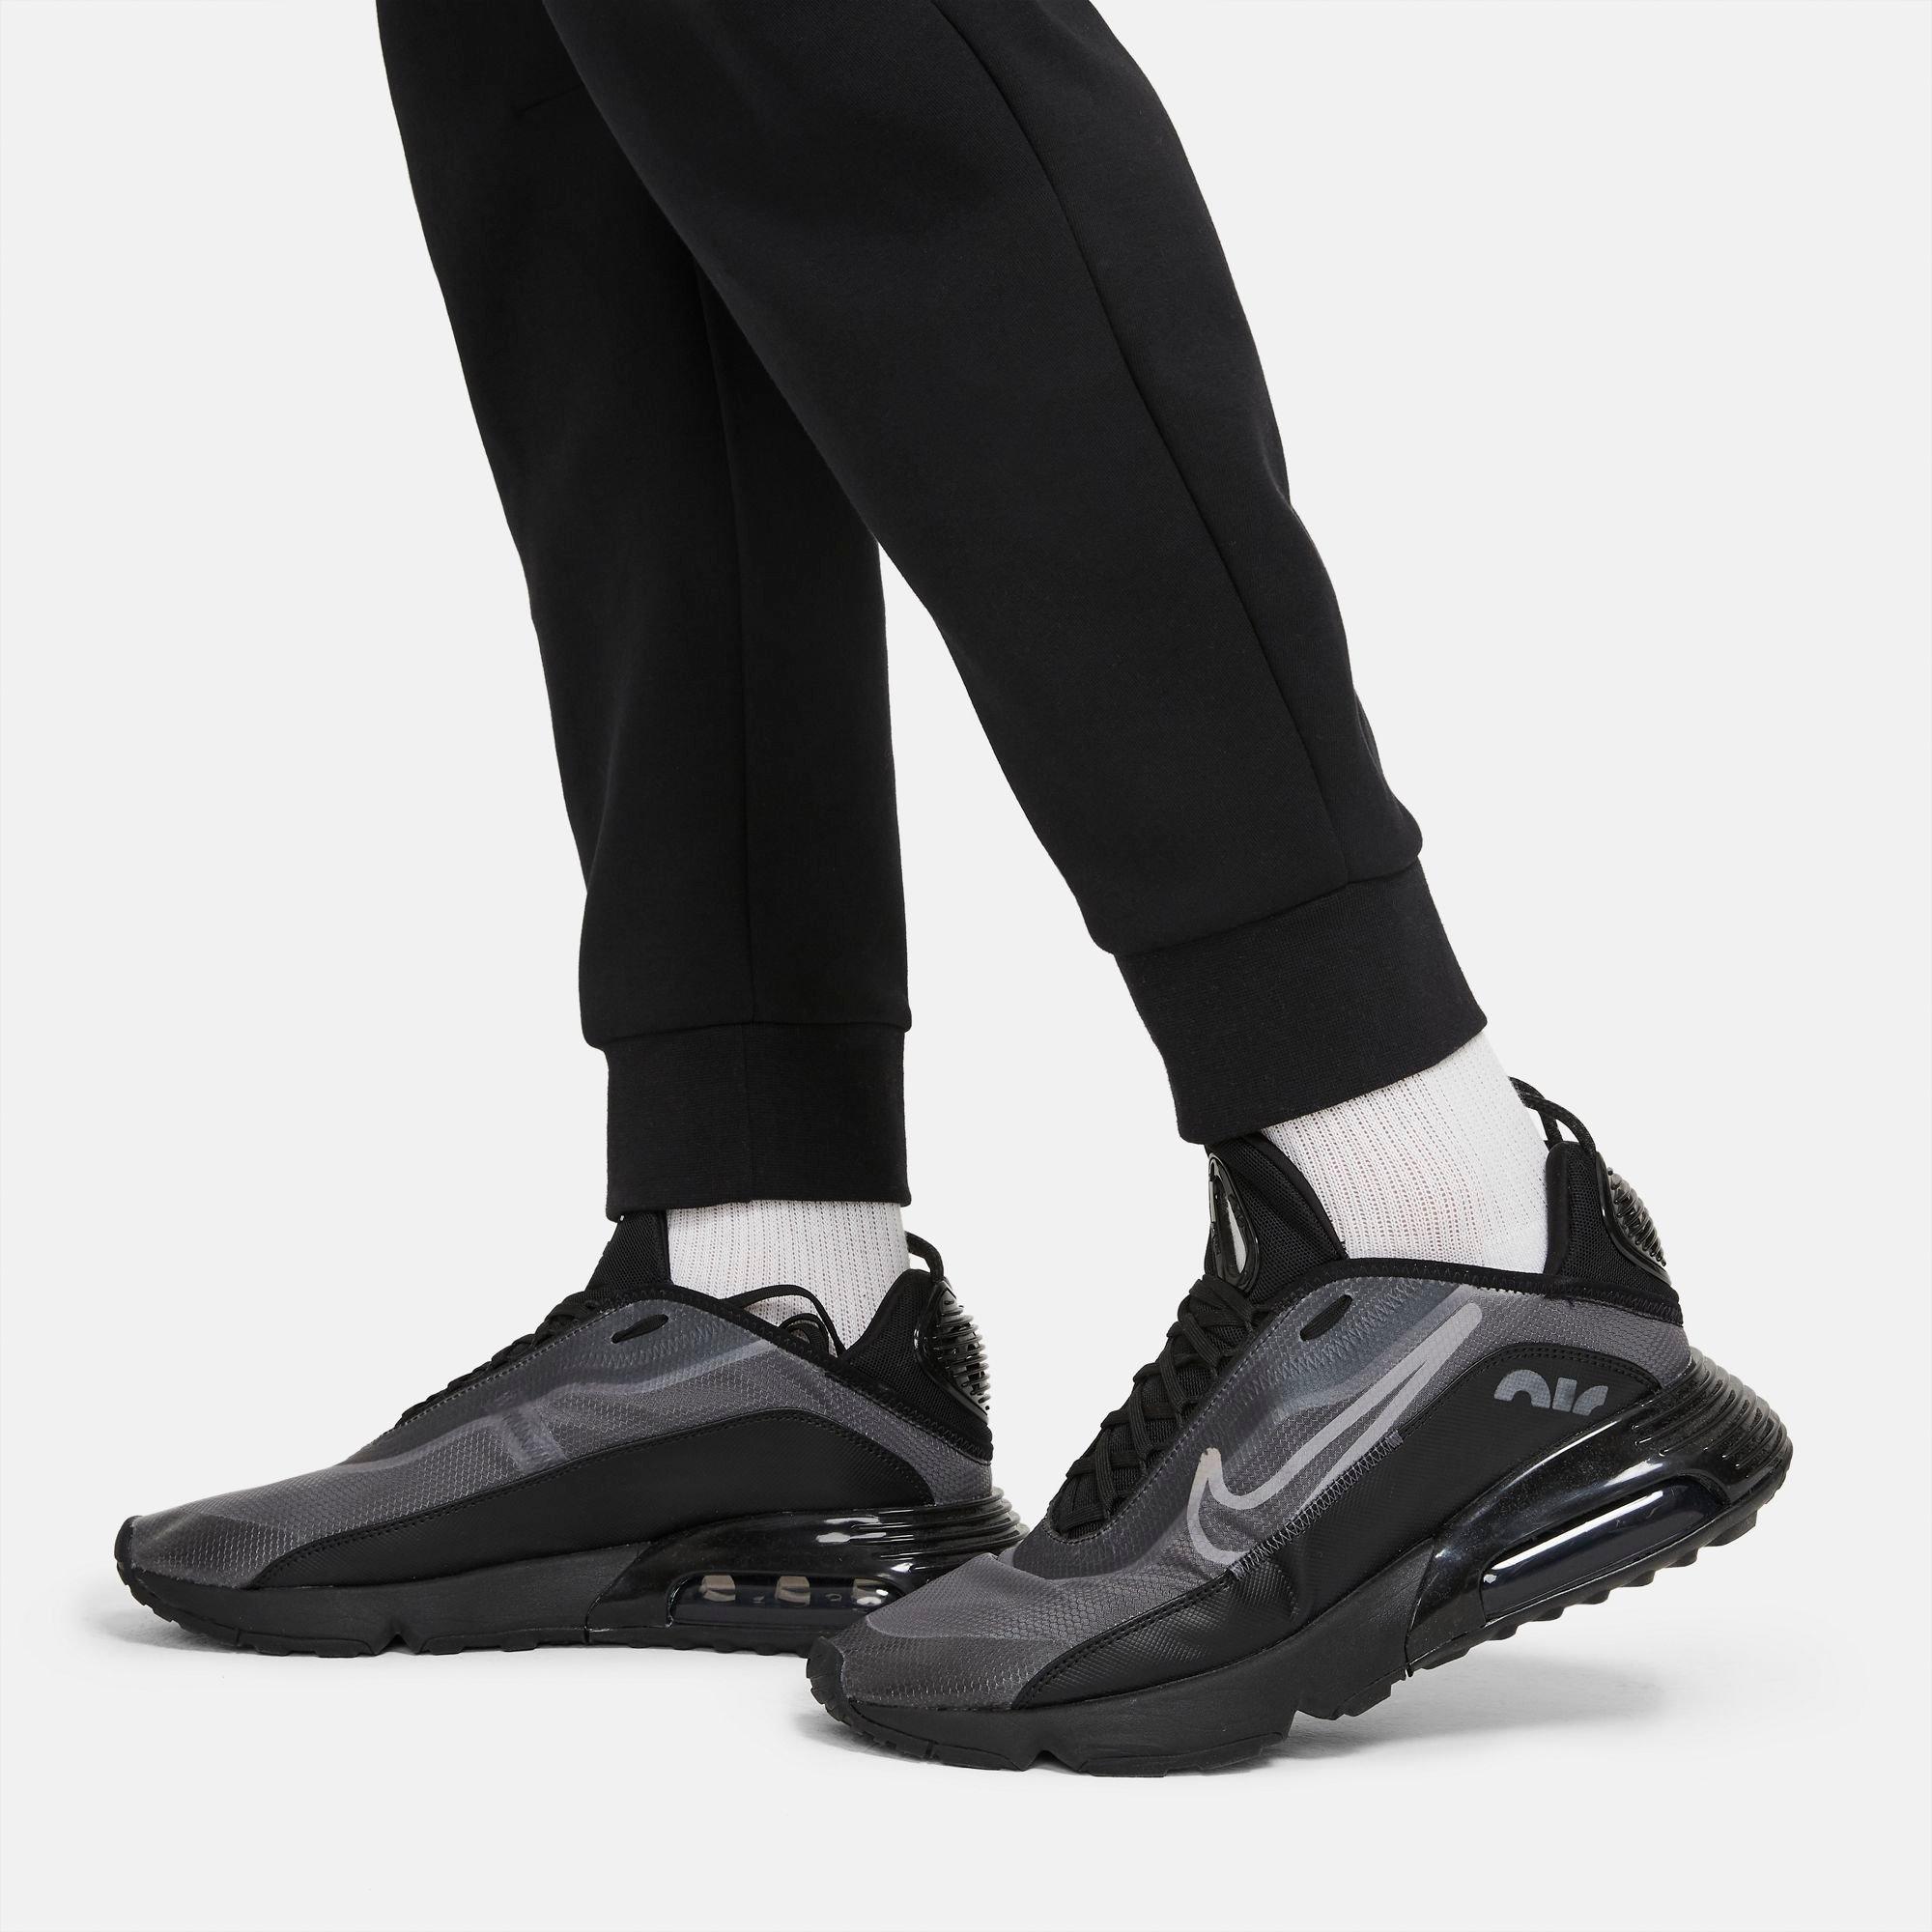 Nike Men's Sportswear Tech Fleece 